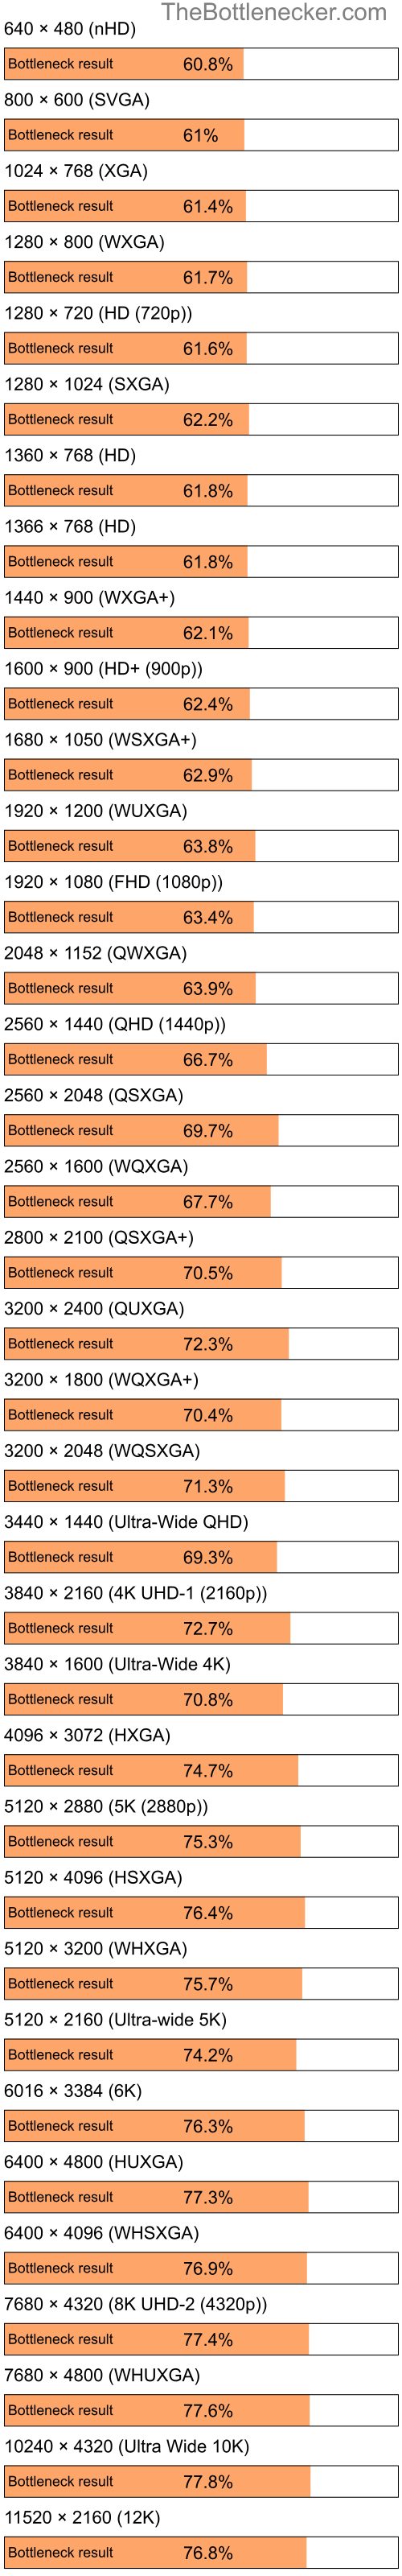 Bottleneck results by resolution for Intel Celeron and NVIDIA GeForce GT 320M in General Tasks